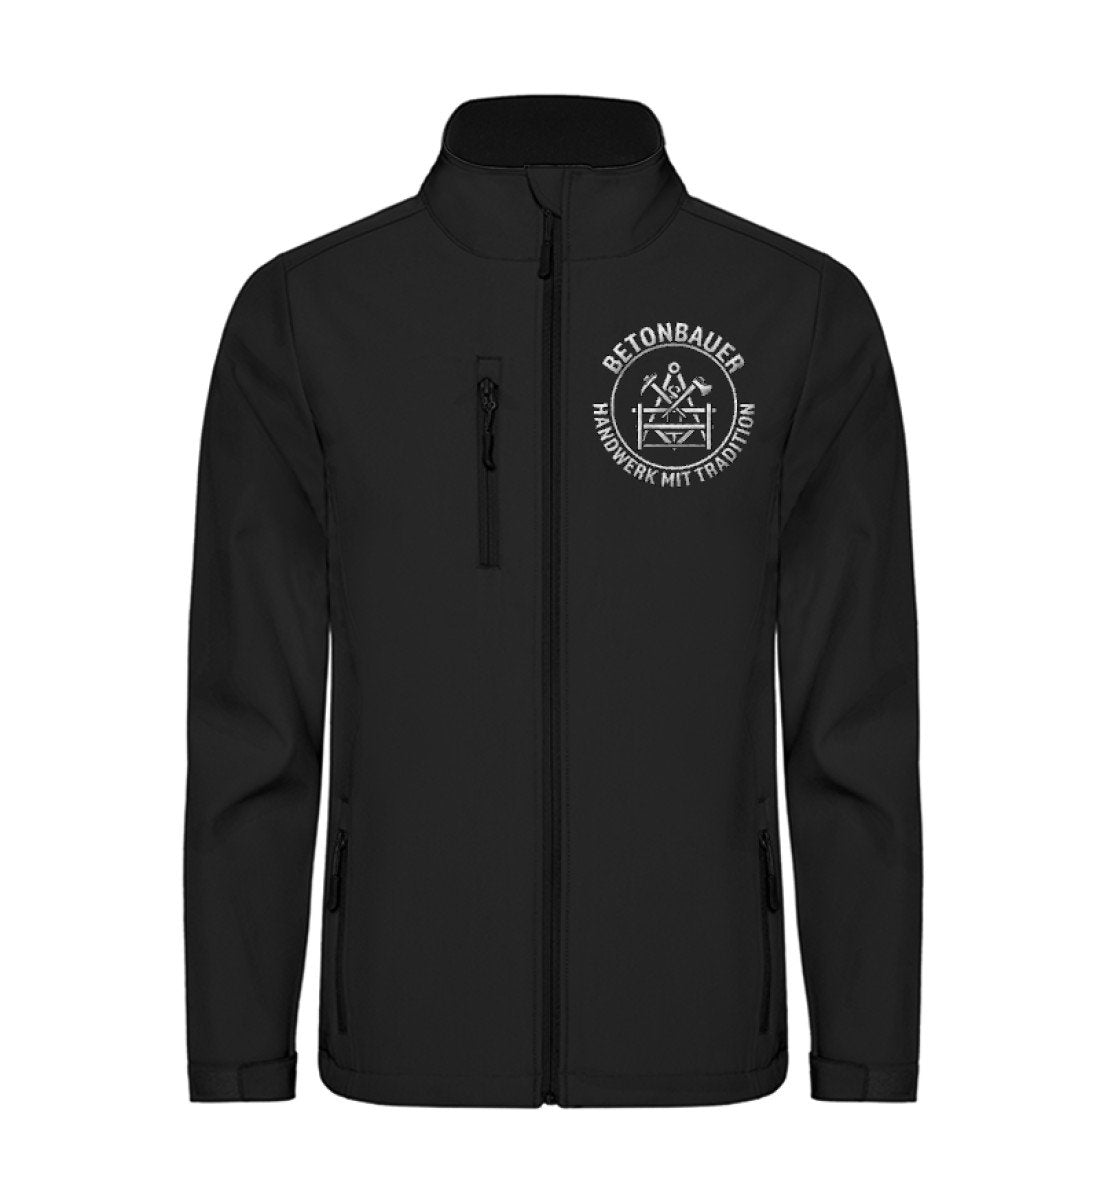 Betonbauer - Sofshell Jacket mit Stick €59.95 Handwerkerfashion